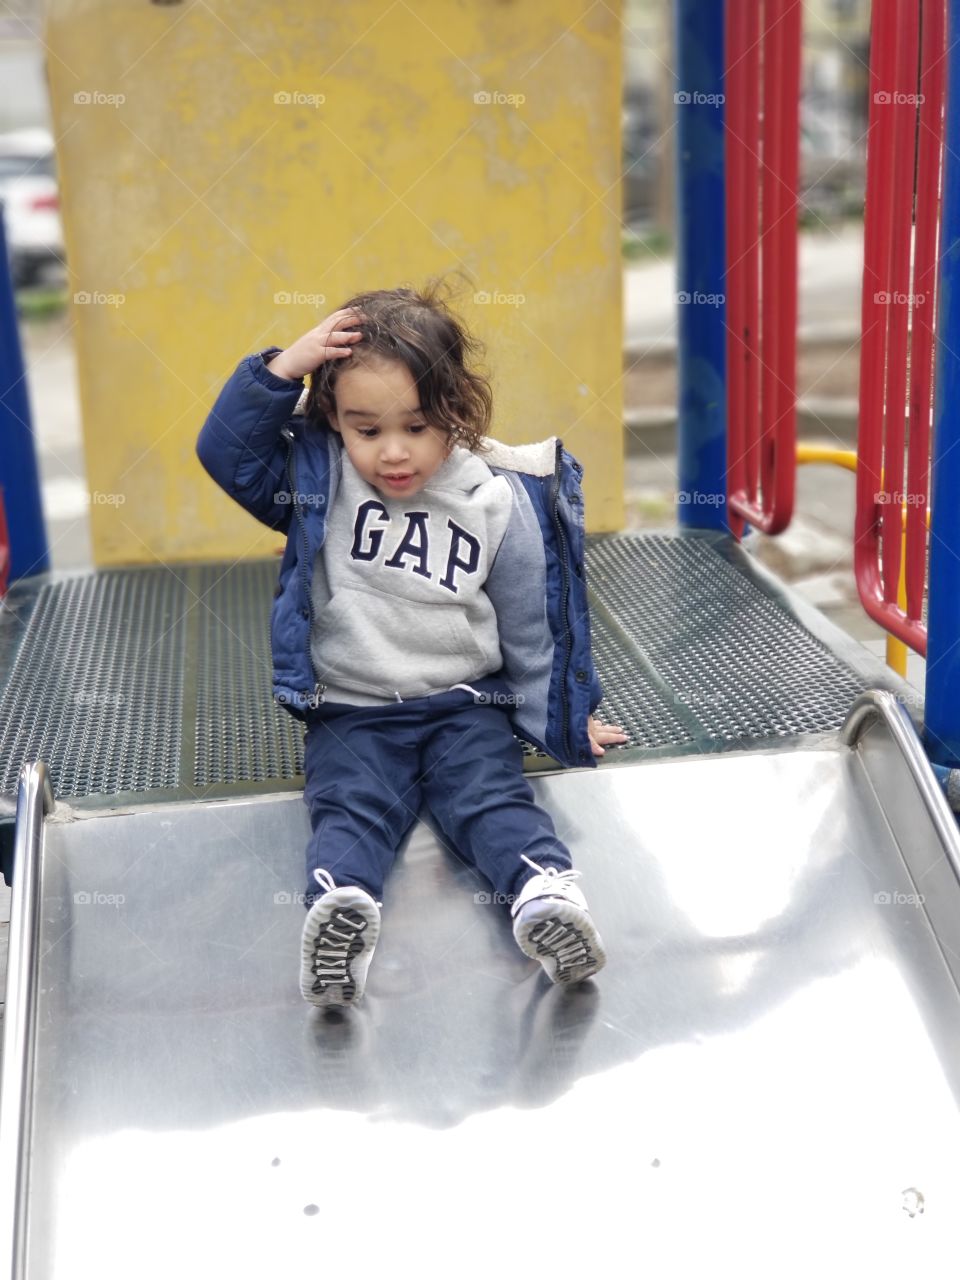 Playground kid